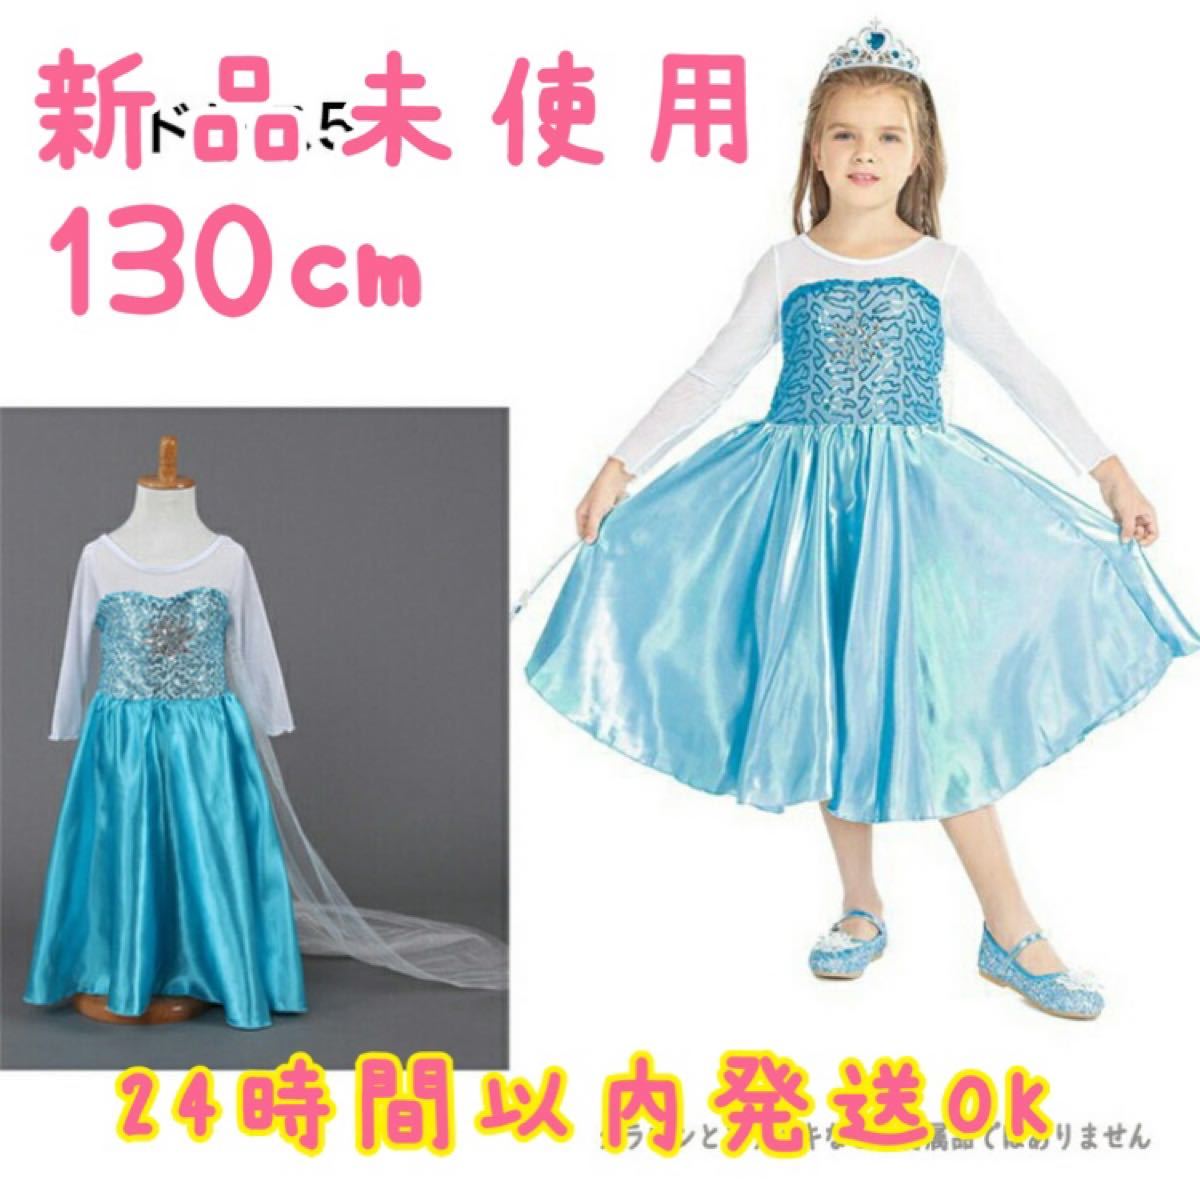 【新品未使用】ハロウィン ディズニープリンセスドレス アナと雪の女王 エルサ風ドレス 130センチ